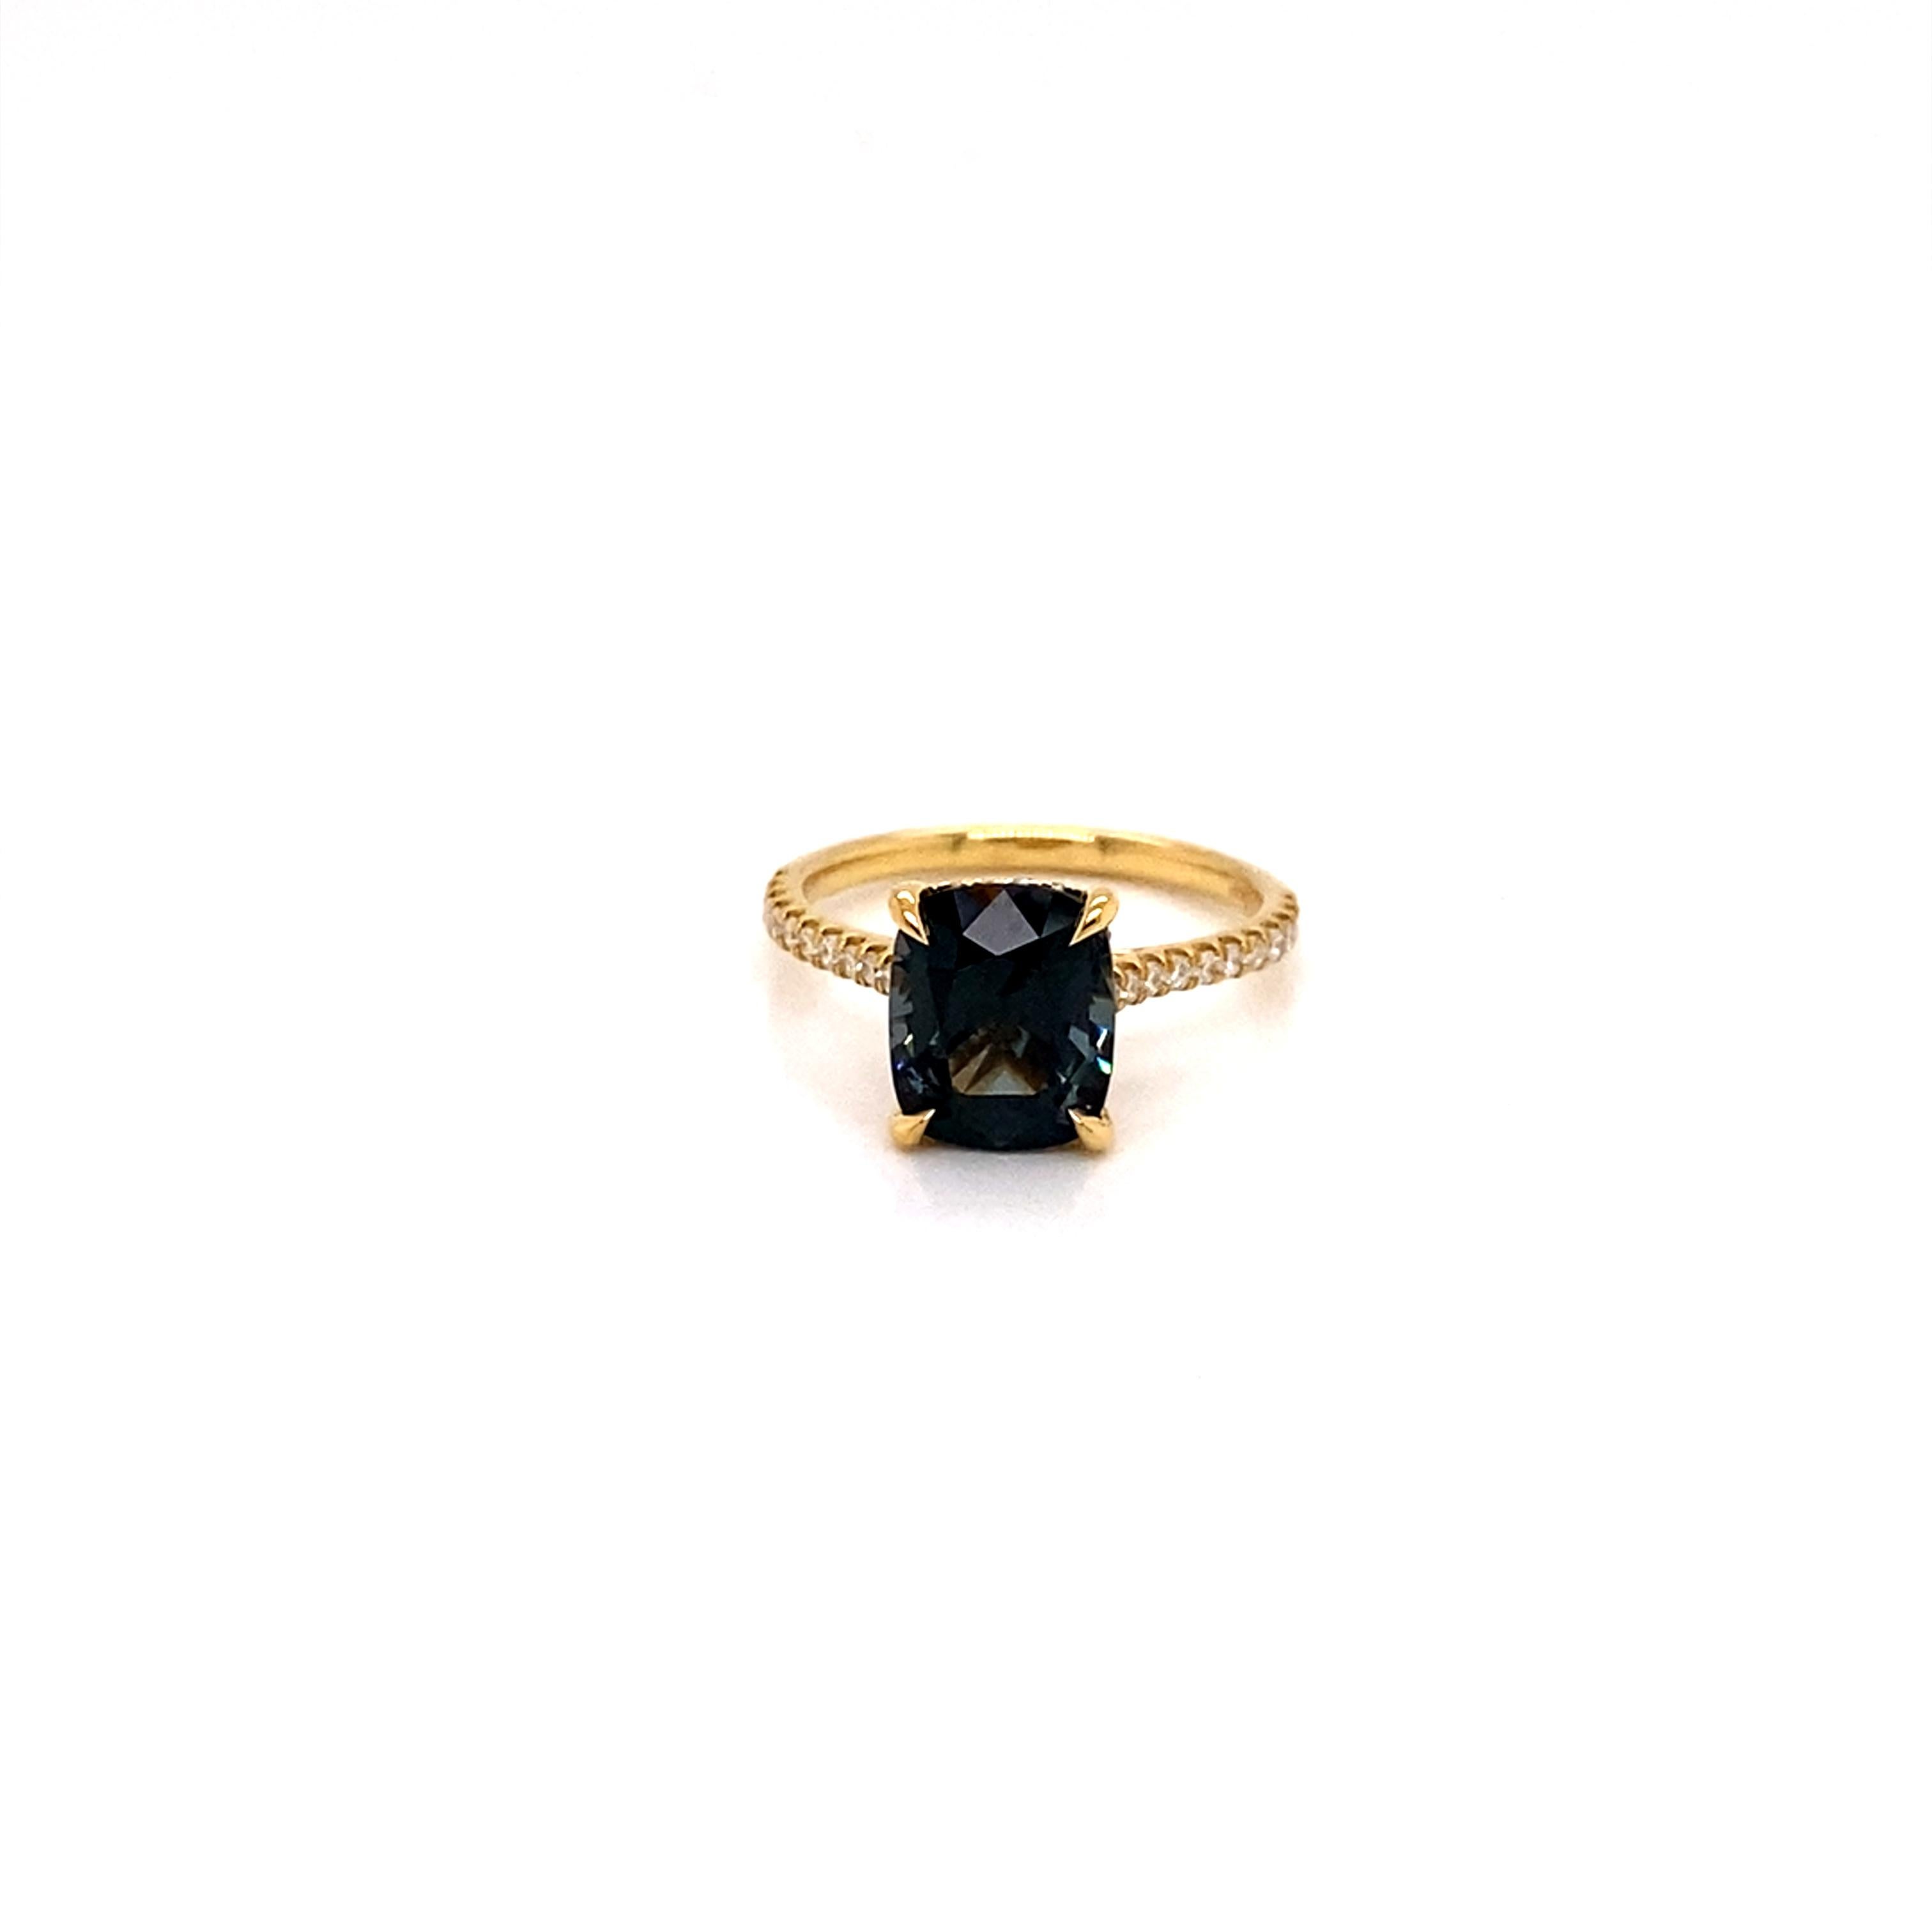 Ein atemberaubender 3,03ct Smoky Teal Spinel ist das Herzstück dieses wunderbar glamourösen Rings. 
Der natürliche Spinell ist in ein hochglanzpoliertes 18-karätiges Gelbgoldband gefasst und mit schimmernden Diamanten auf dem Band und einem